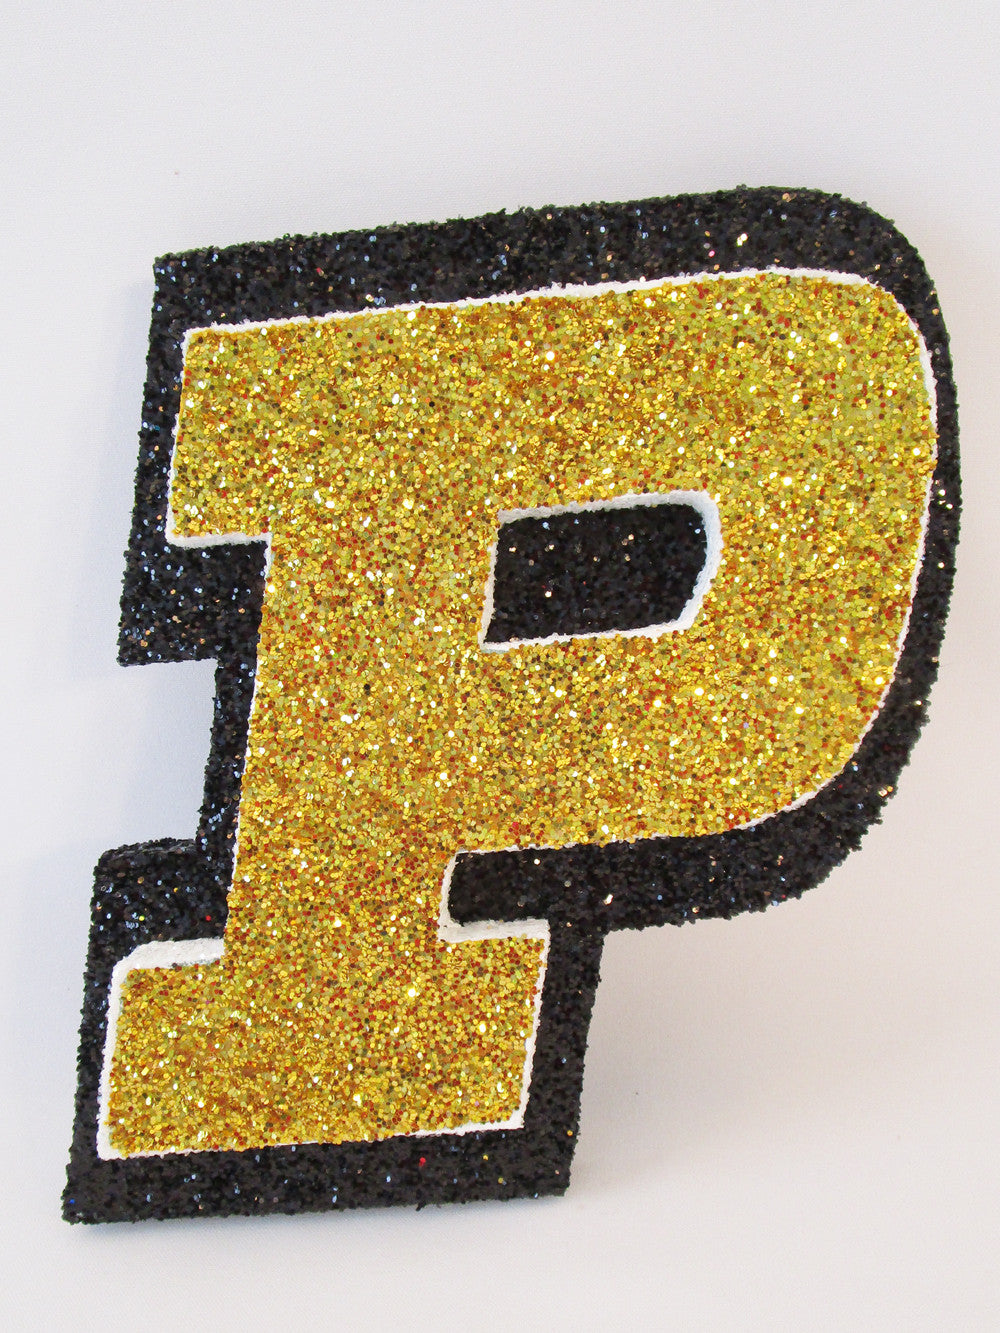 Purdue P Logo cutout